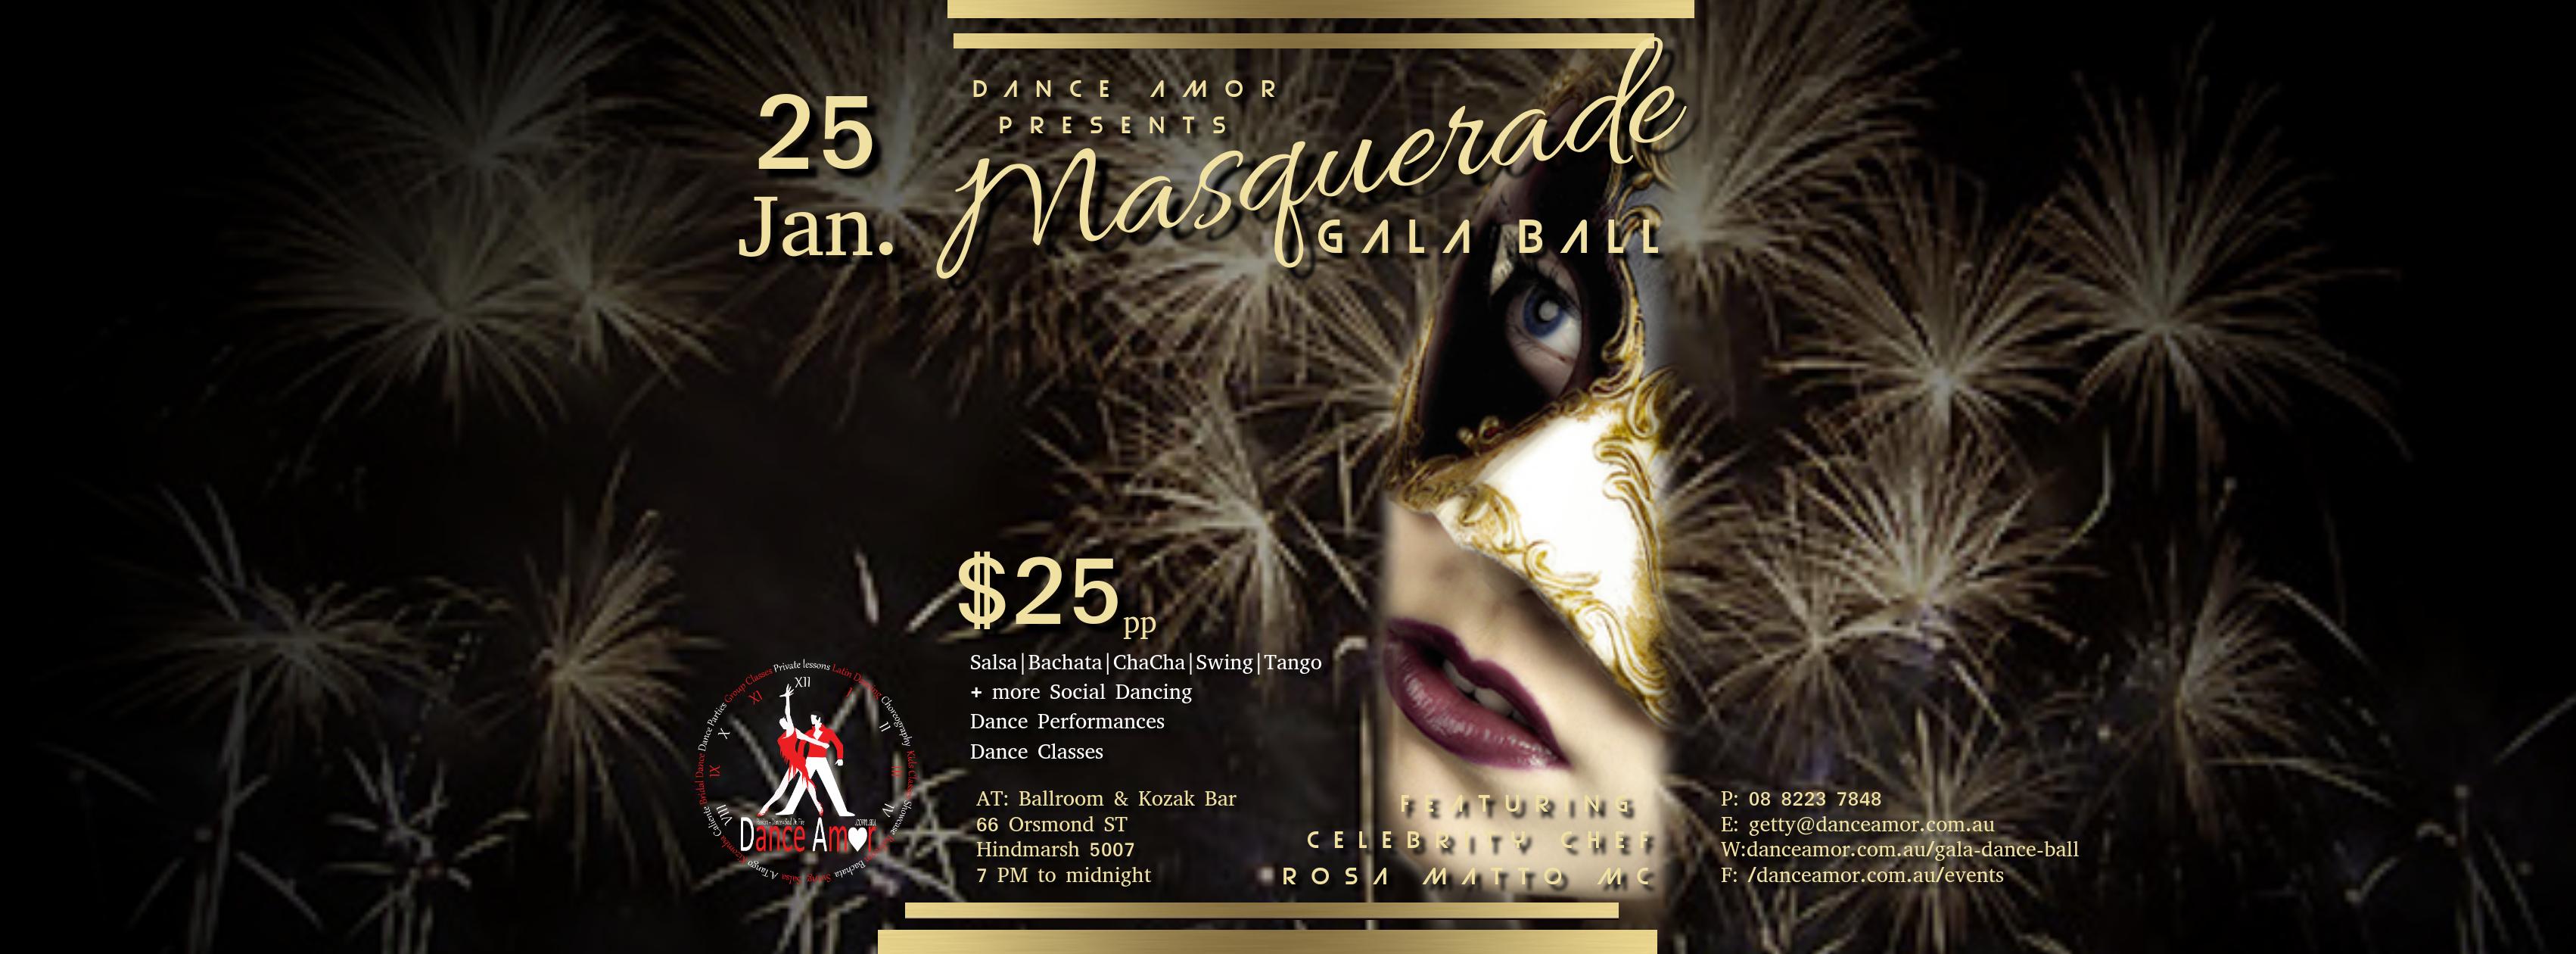 Masquerade Gala Dance Ball